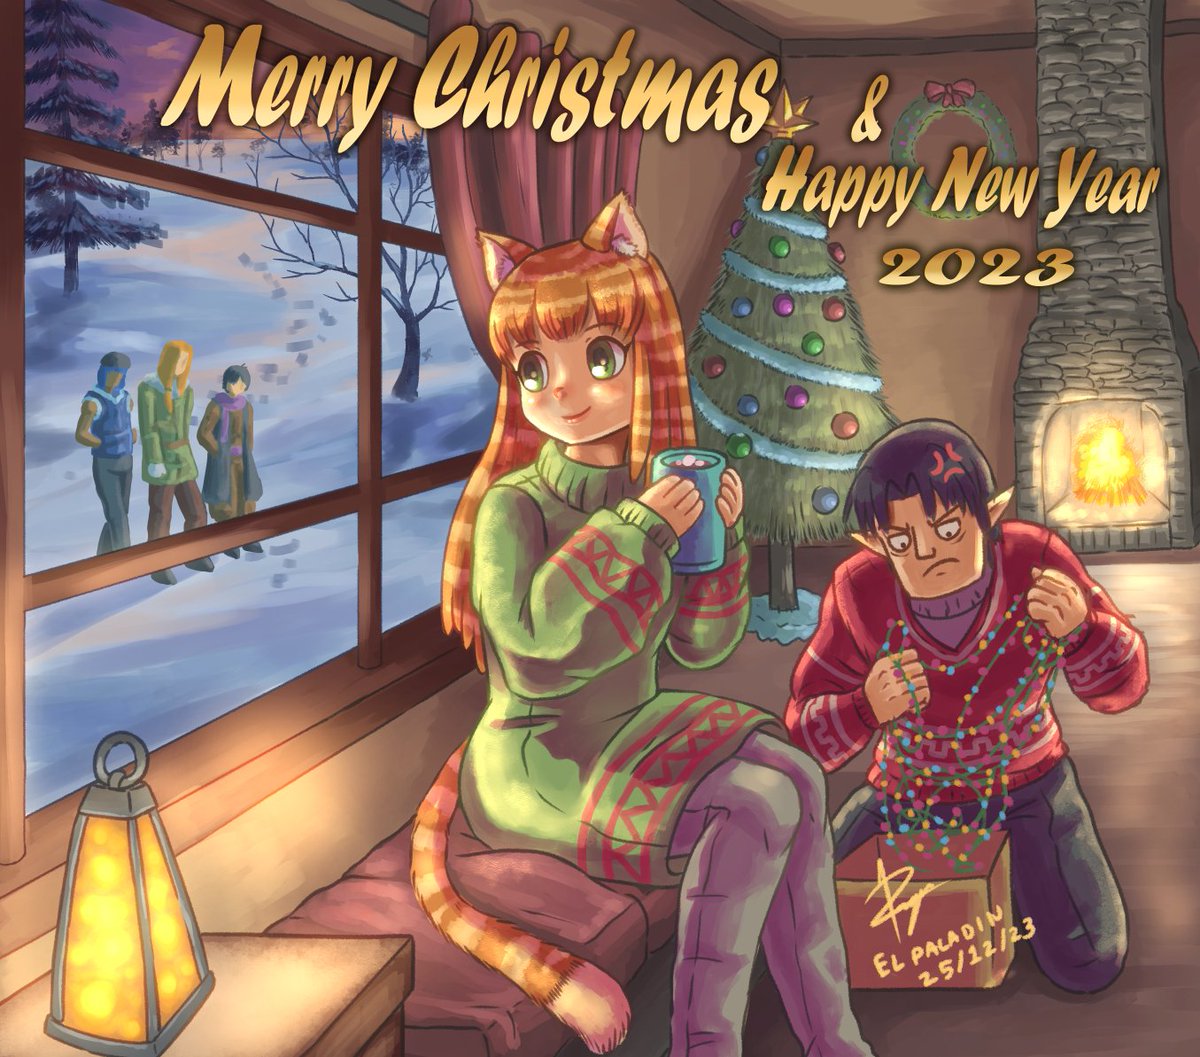 Xmas & happy new year! 🎅🎄⛄️
#Xmas2023 #tree #chimney #CozyChristmas #digitaldrawing #illustration  #catgirl #Orange #Elf  #fantasy #oc